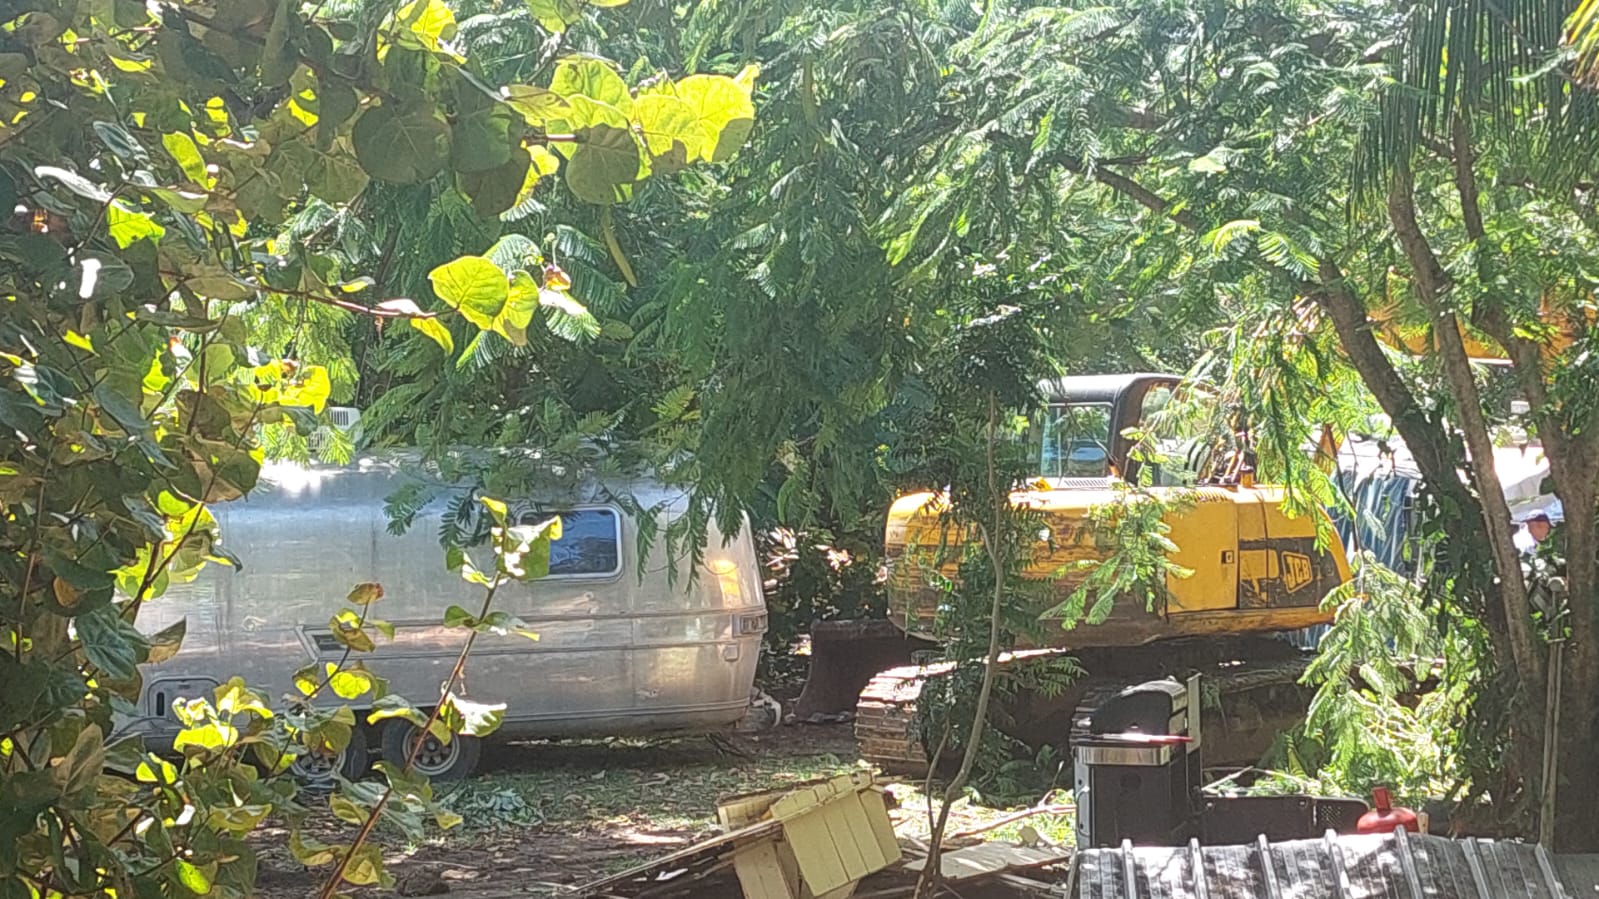     Sainte-Anne : la mairie fait évacuer les caravanes d’Airstream de la Pointe Marin

